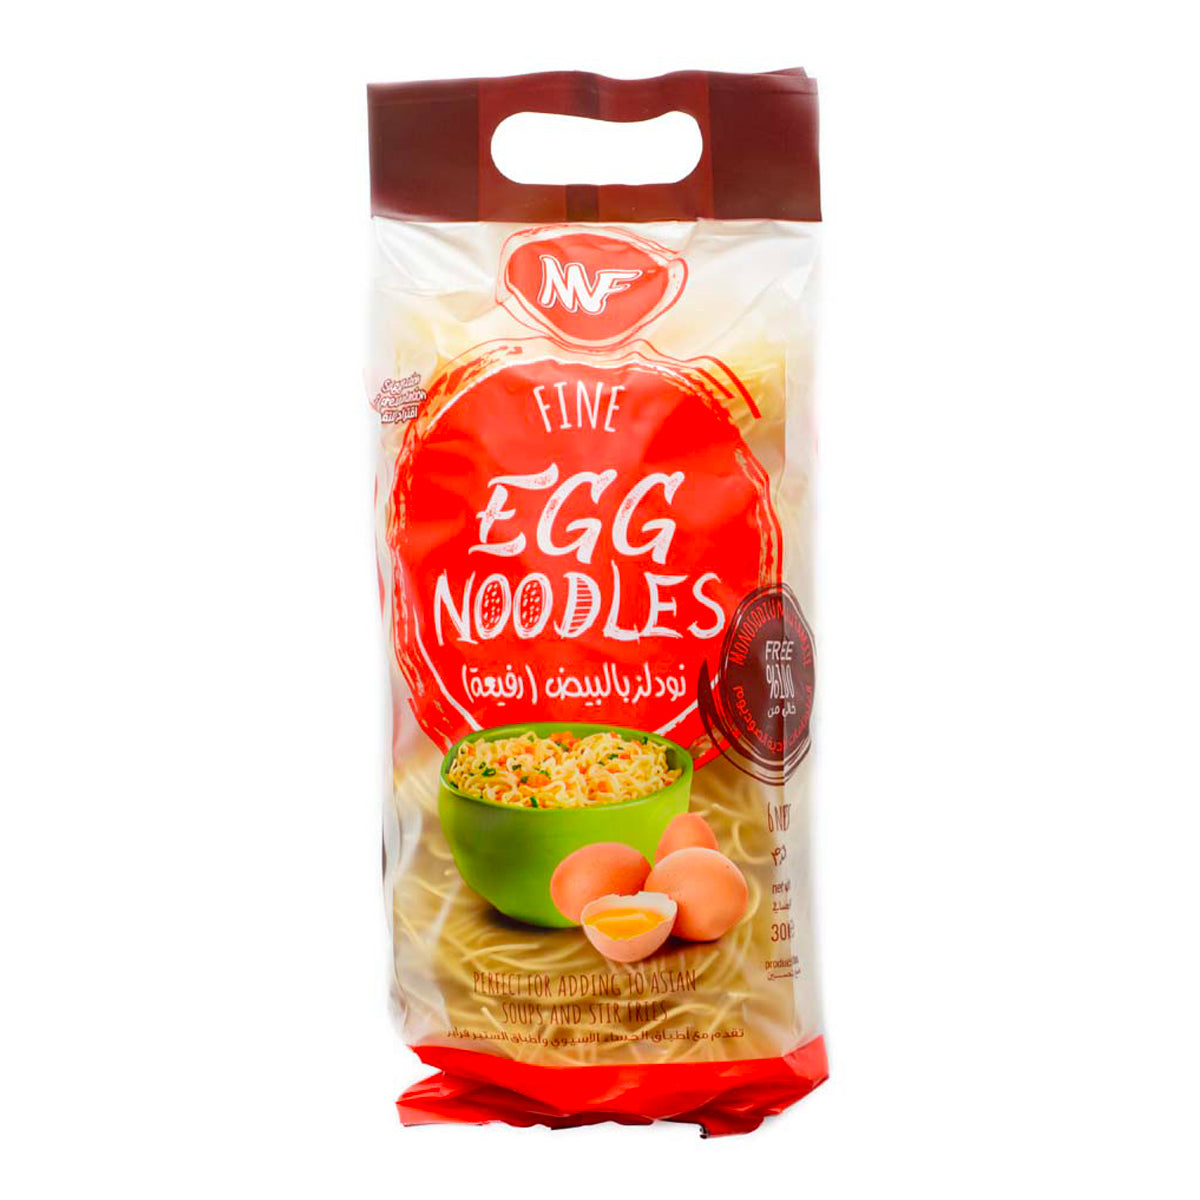 MF Fine Egg Noodles 300g